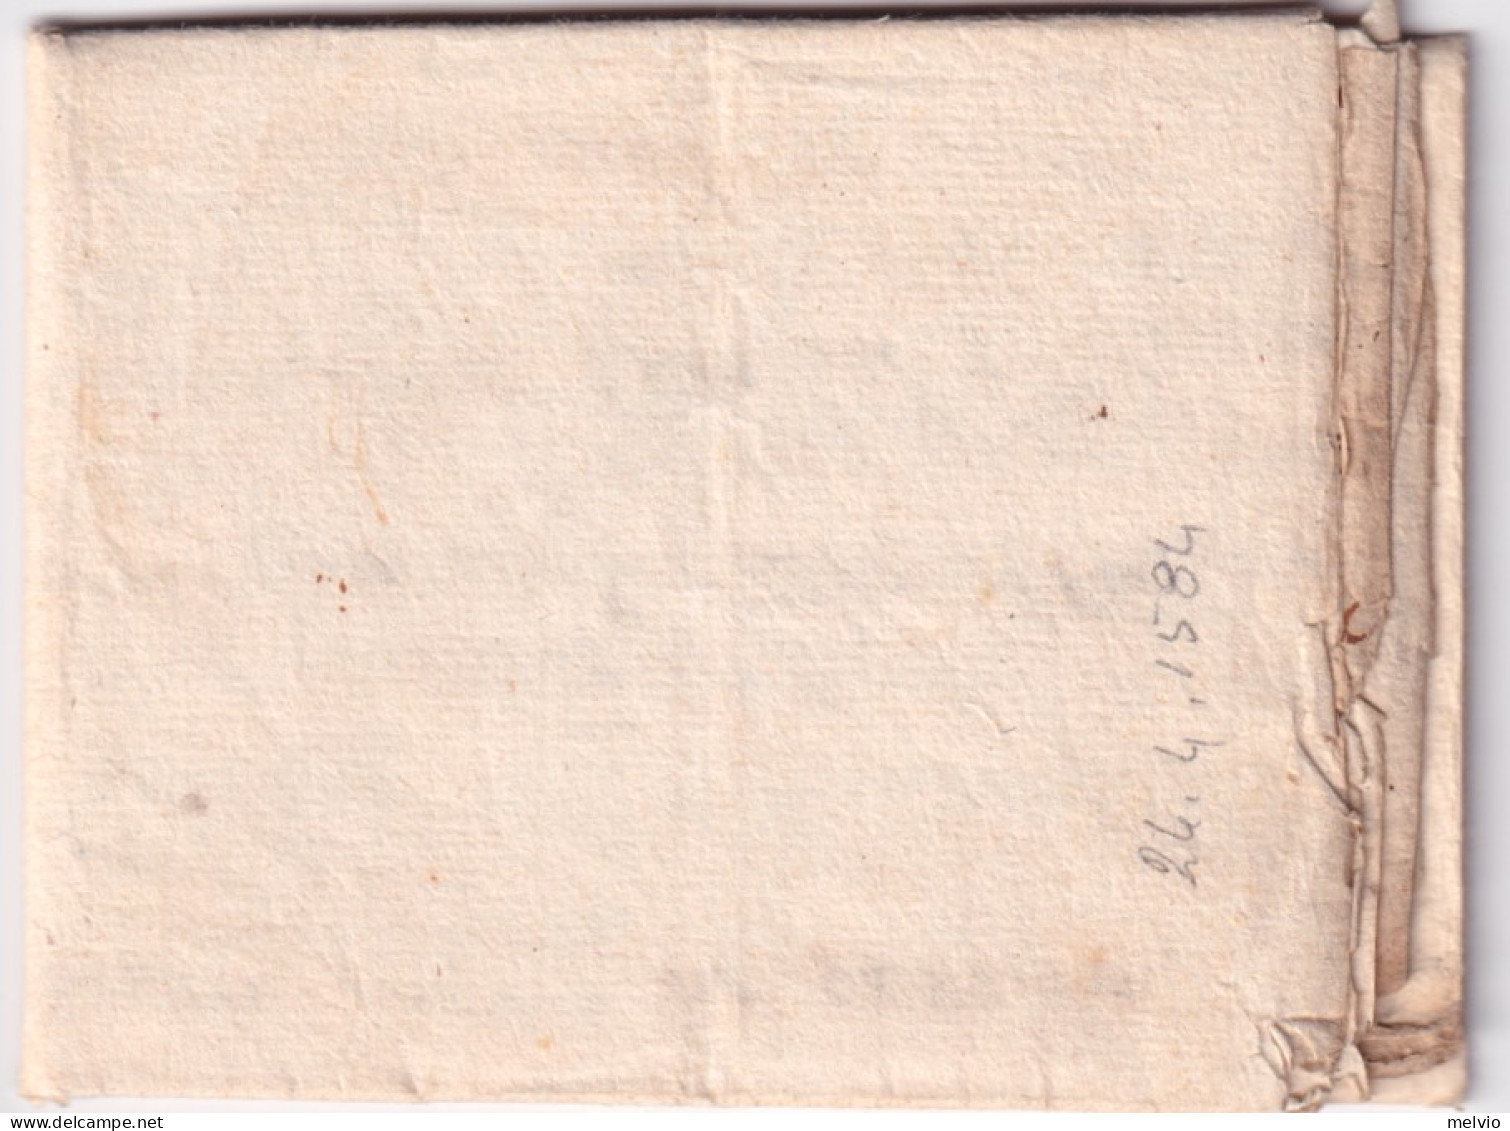 1584-BRESCIA Ricevuta Di Pagamento Redatta Il 24.4 Testo Completo - Historical Documents